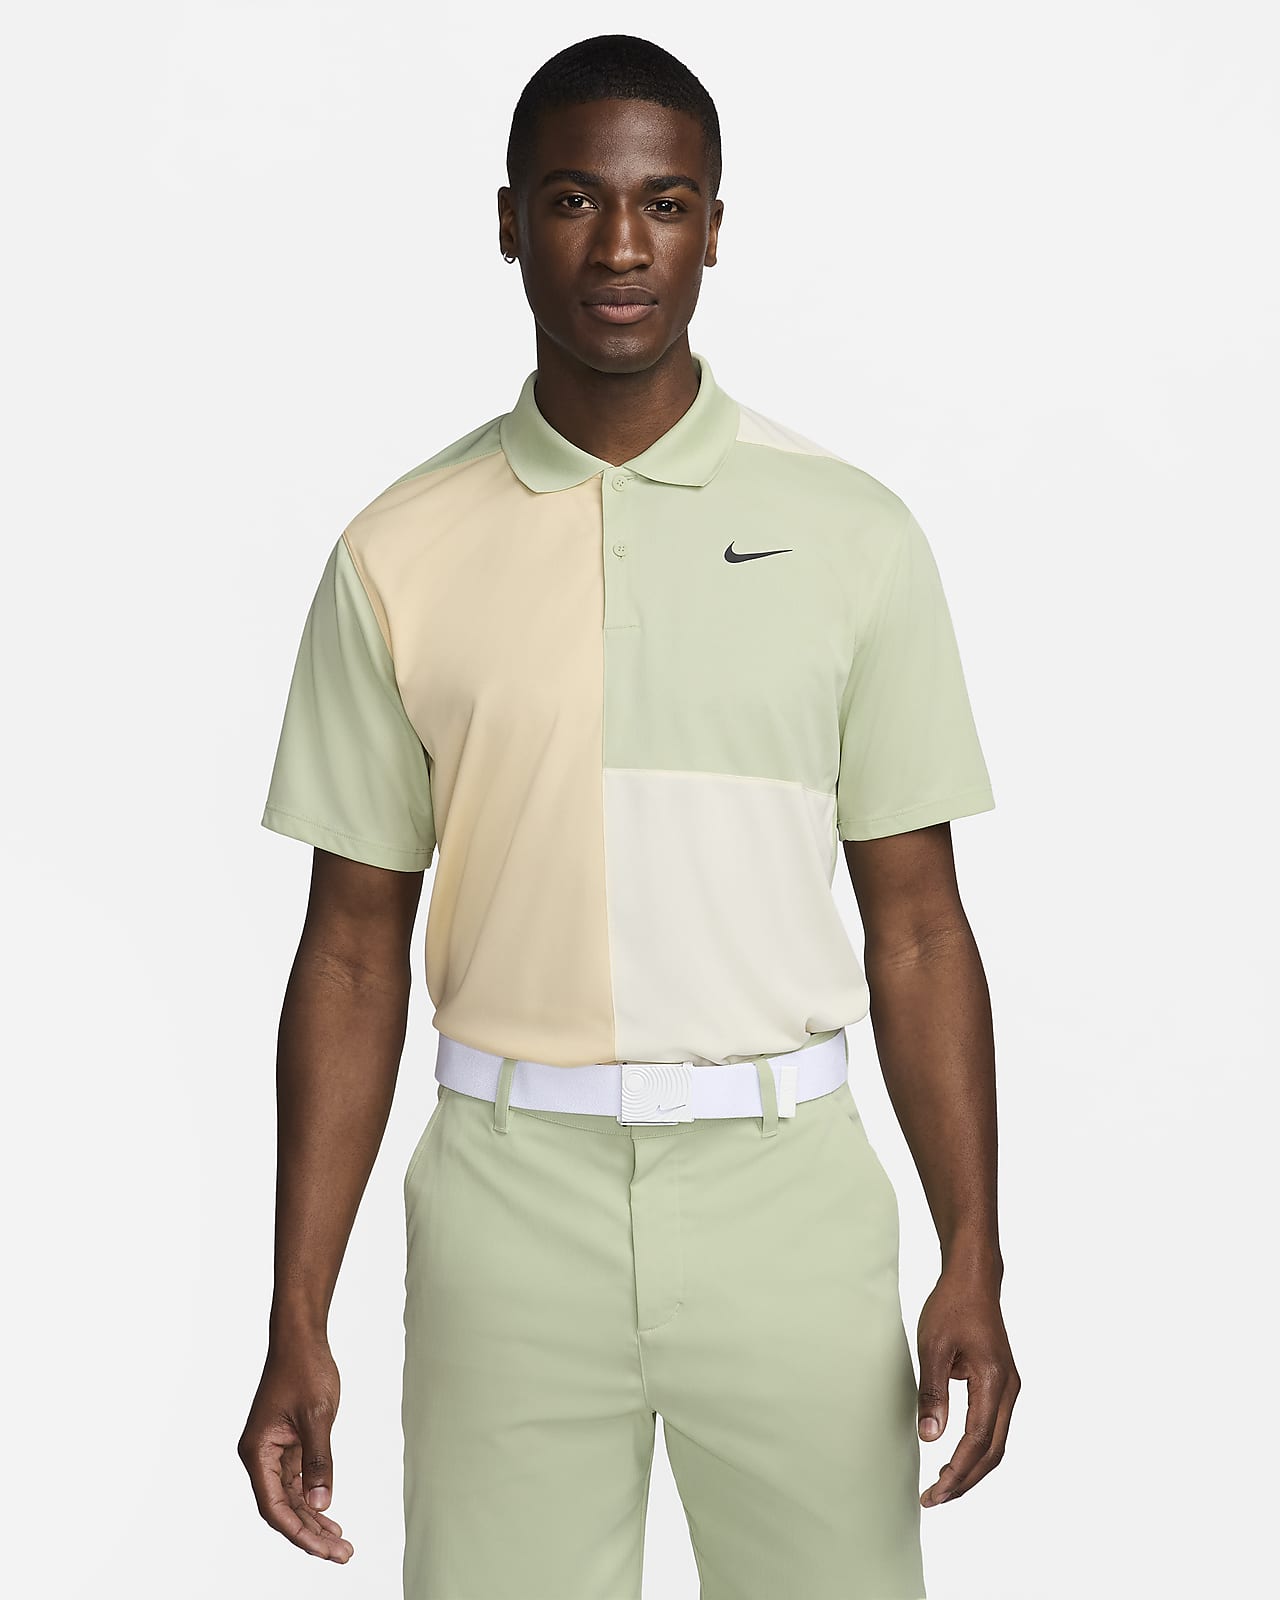 Ανδρική μπλούζα πόλο για γκολφ Dri-FIT Nike Victory+